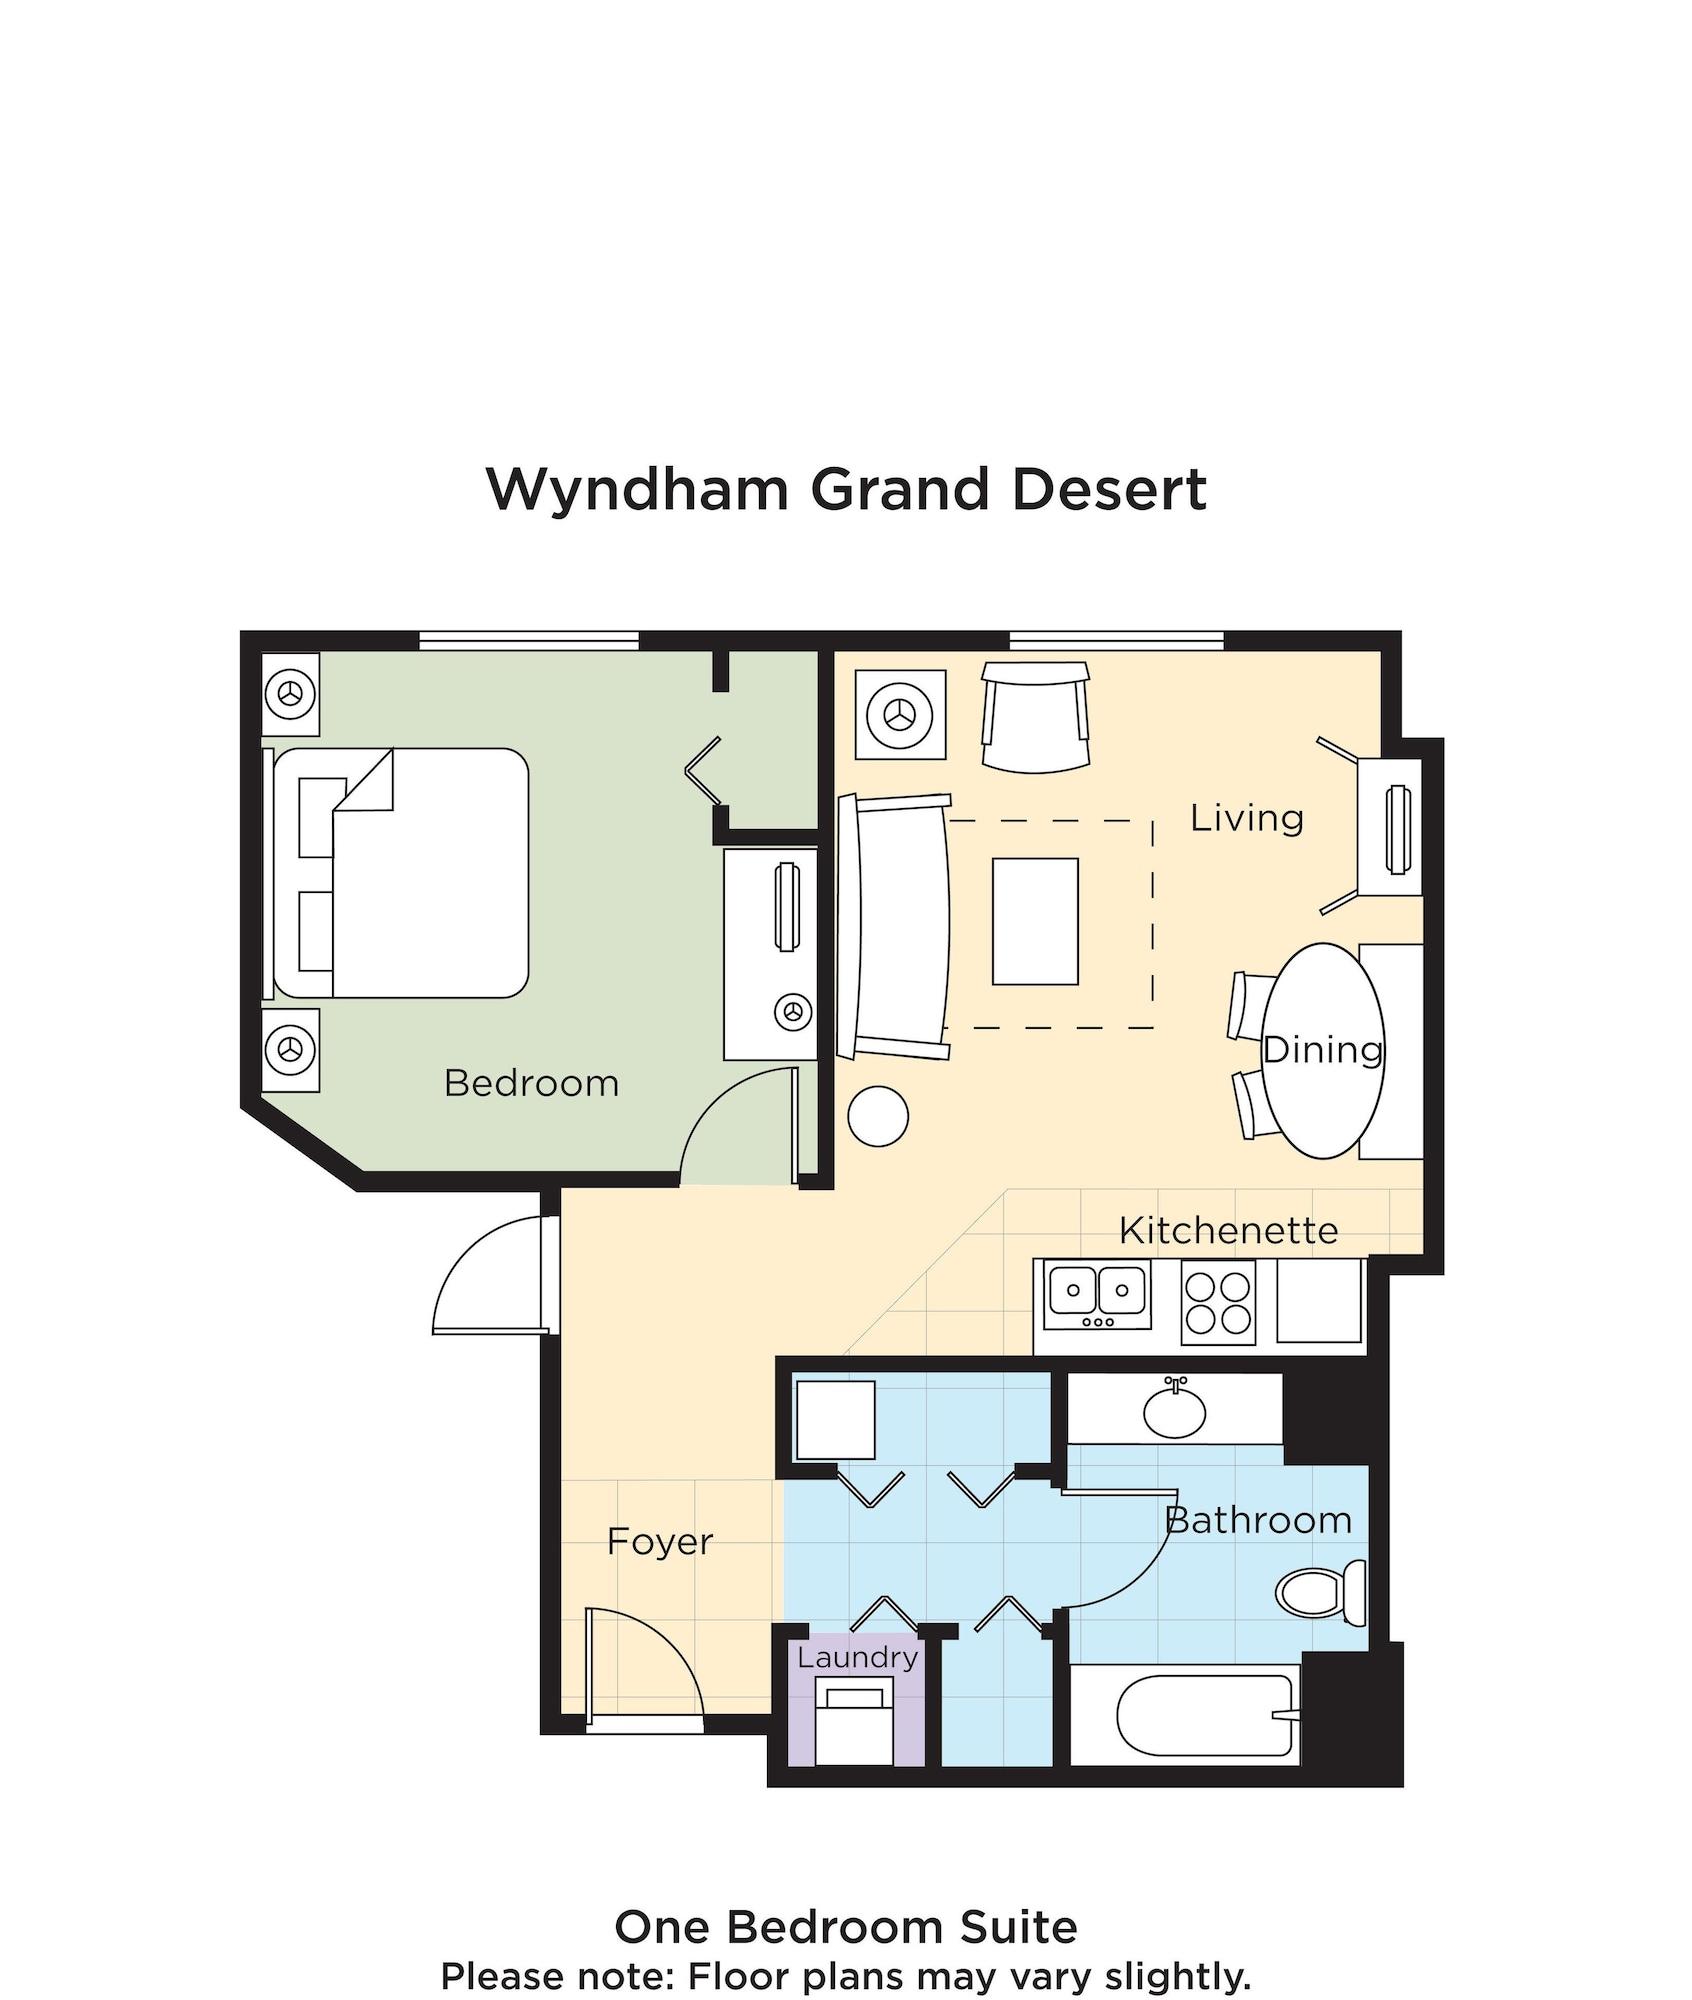 لاس فيغاس Club Wyndham Grand Desert المظهر الخارجي الصورة